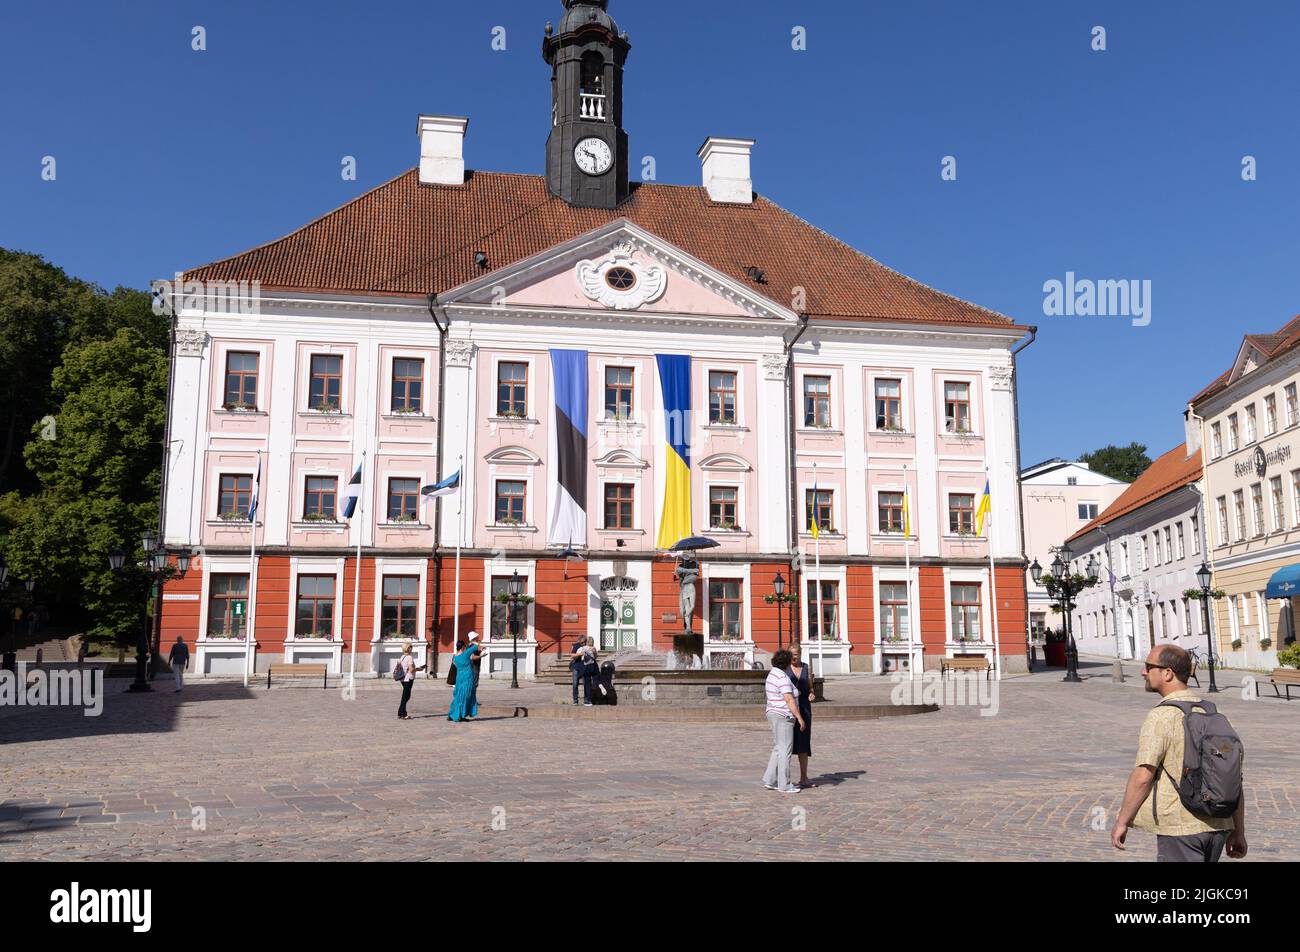 Rathaus von Tartu ein Gebäude aus dem 18.. Jahrhundert auf dem Rathausplatz von Tartu, im Sommer, Tartu Estland Europa Stockfoto